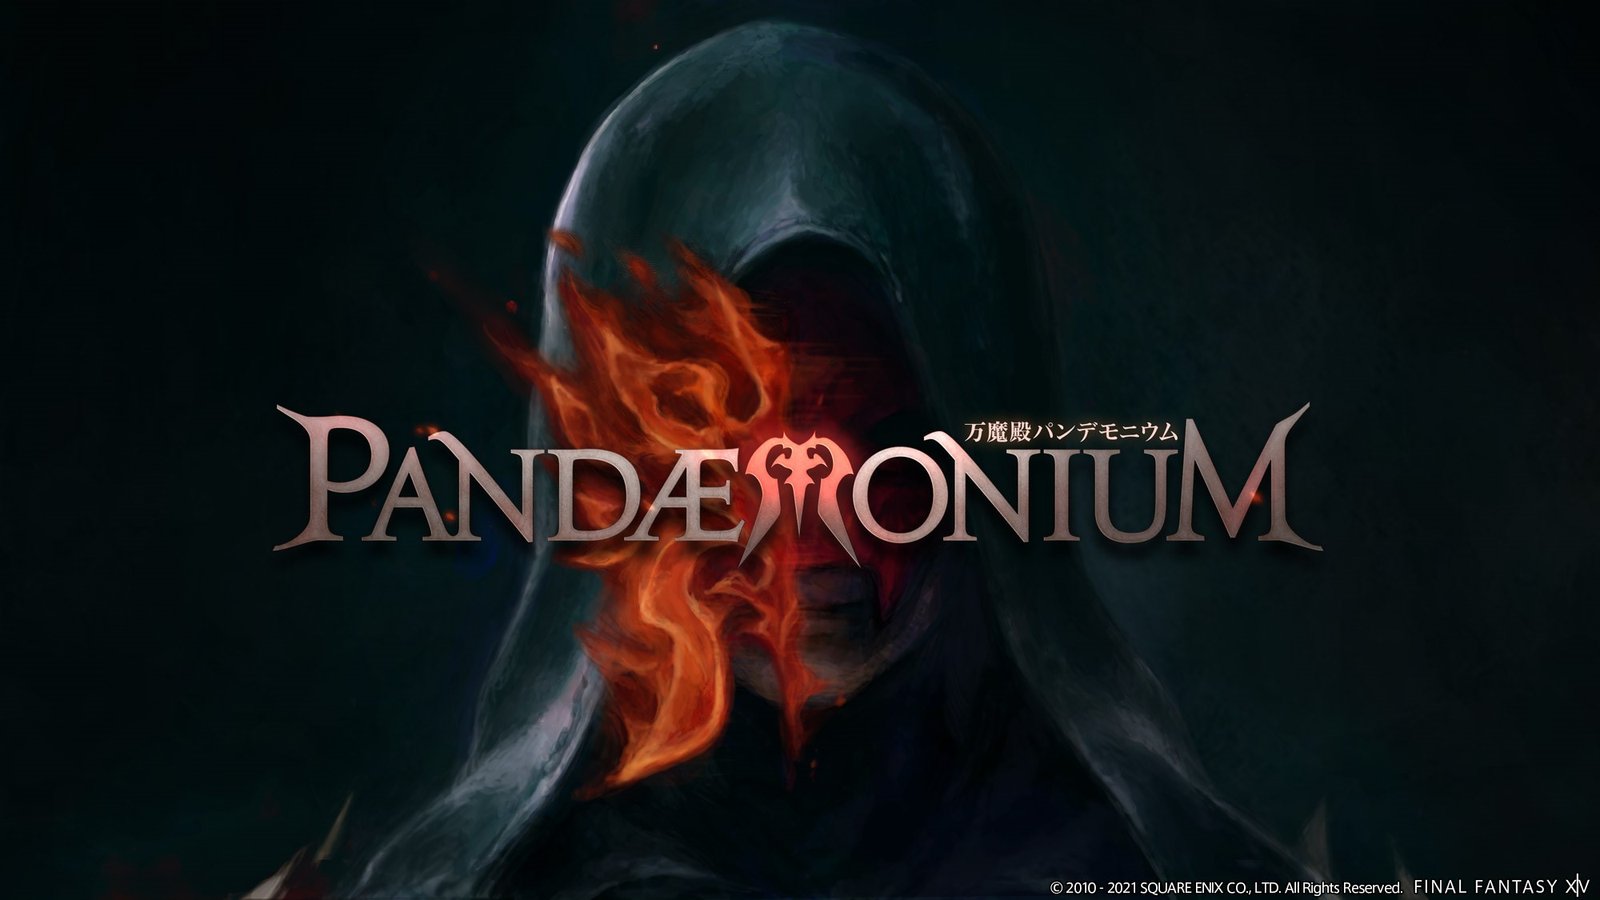 Run the Pandaemonium raids